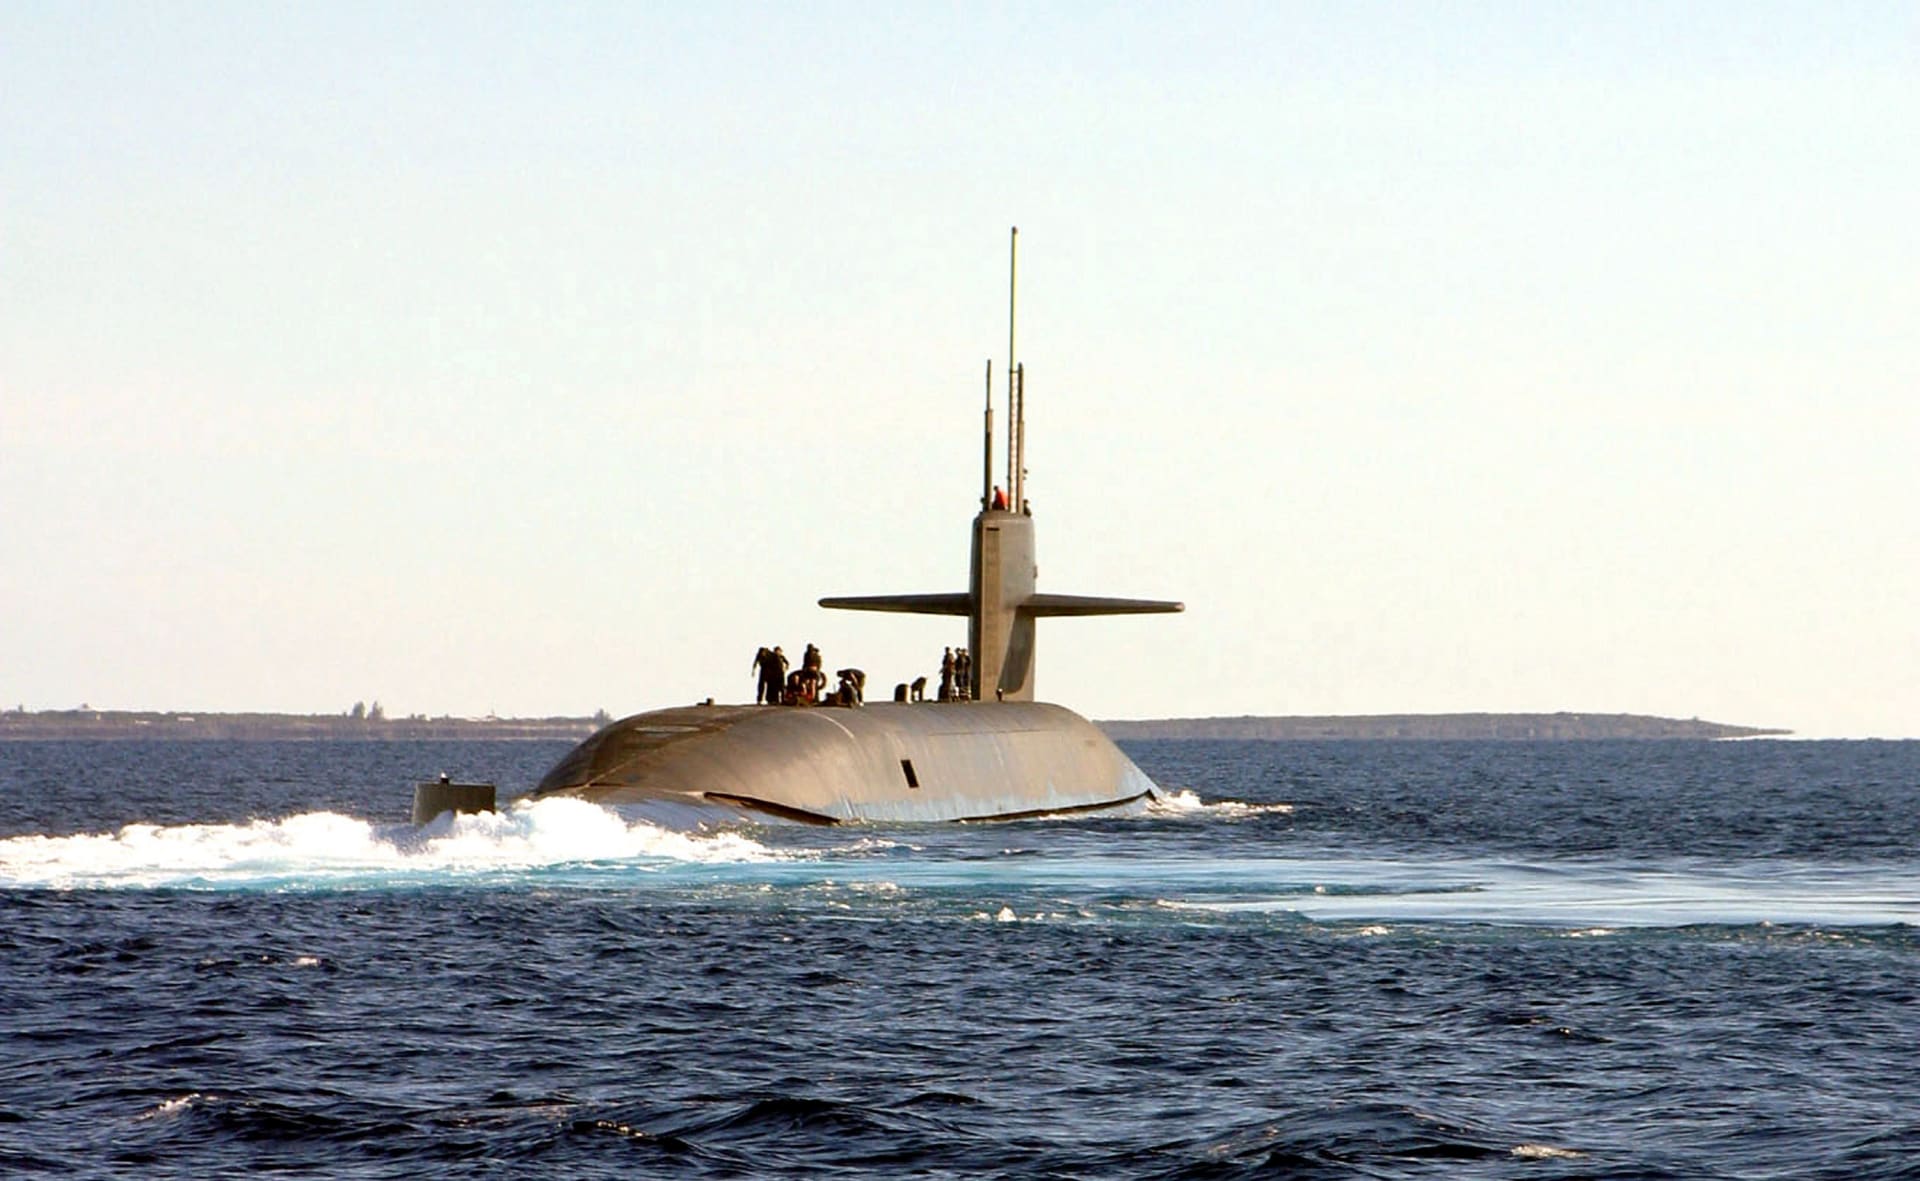 غواصة أمريكية تعمل بالطاقة النووية تصل الشرق الأوسط لدعم الأسطول الخامس 